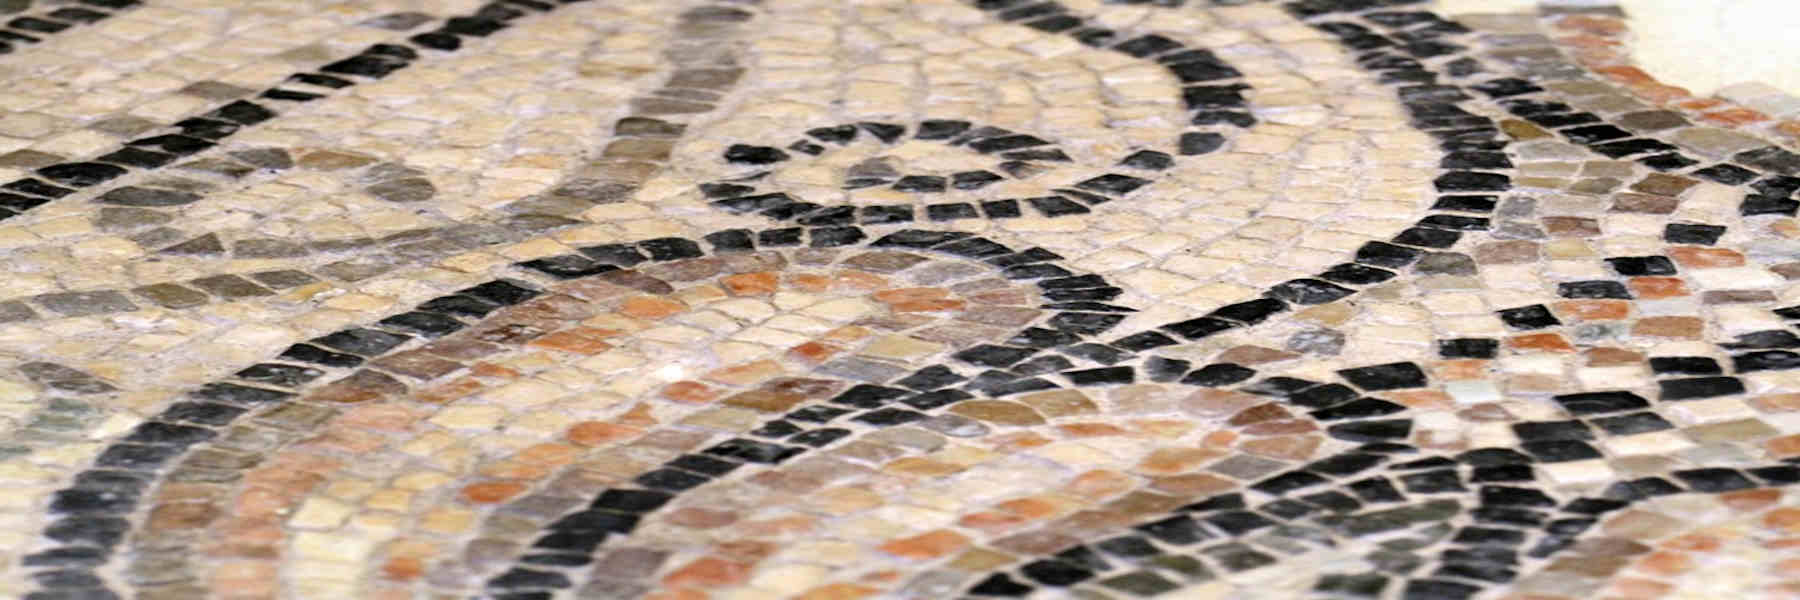 Mostra i Mosaici di San Martino prope litus maris